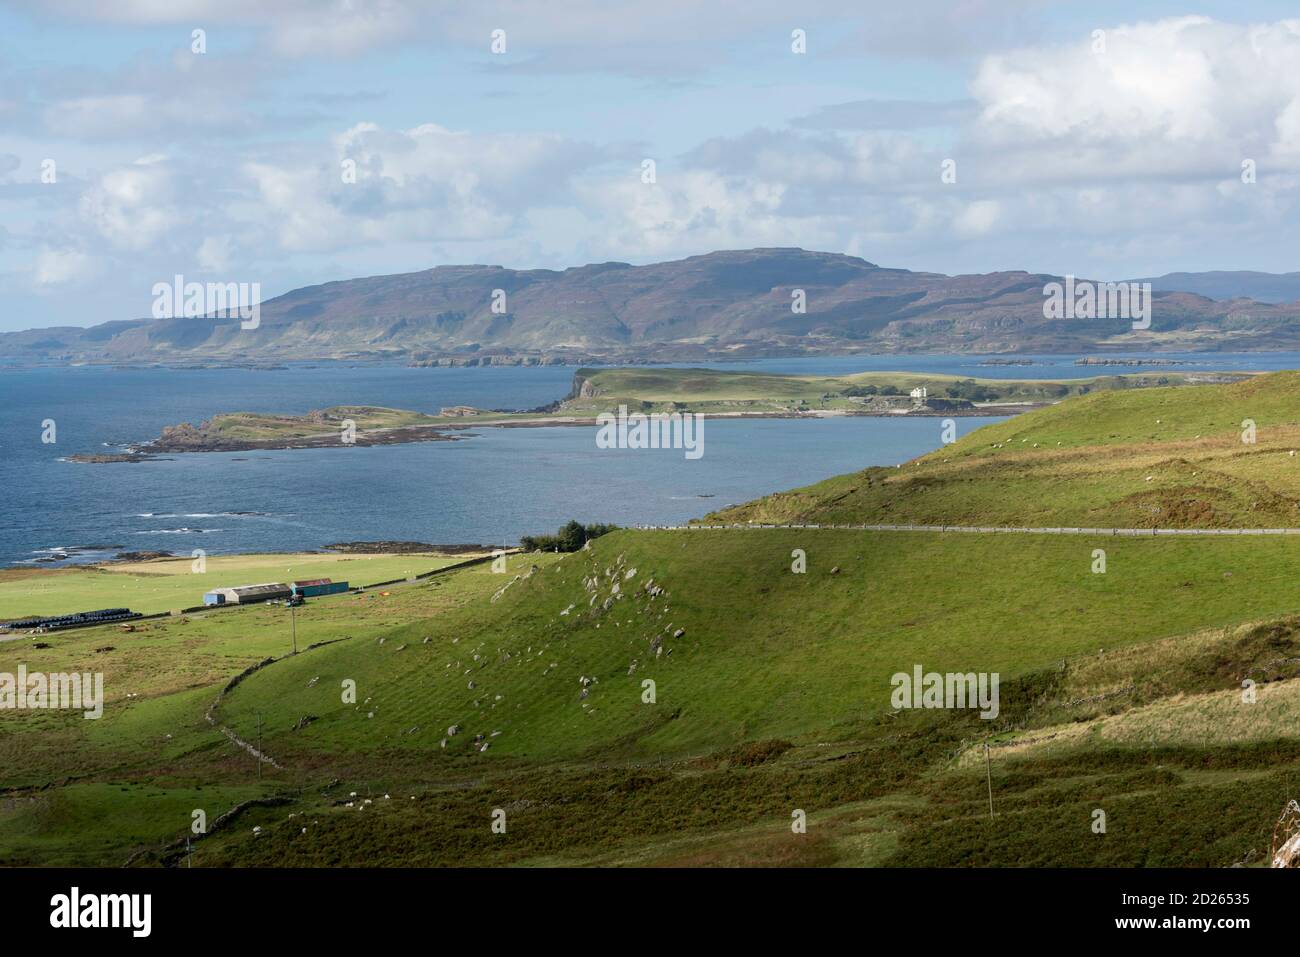 La isla de Mull la vista que mira a lo largo de la pulgada Kenneth y la cadena montañosa más allá Foto de stock